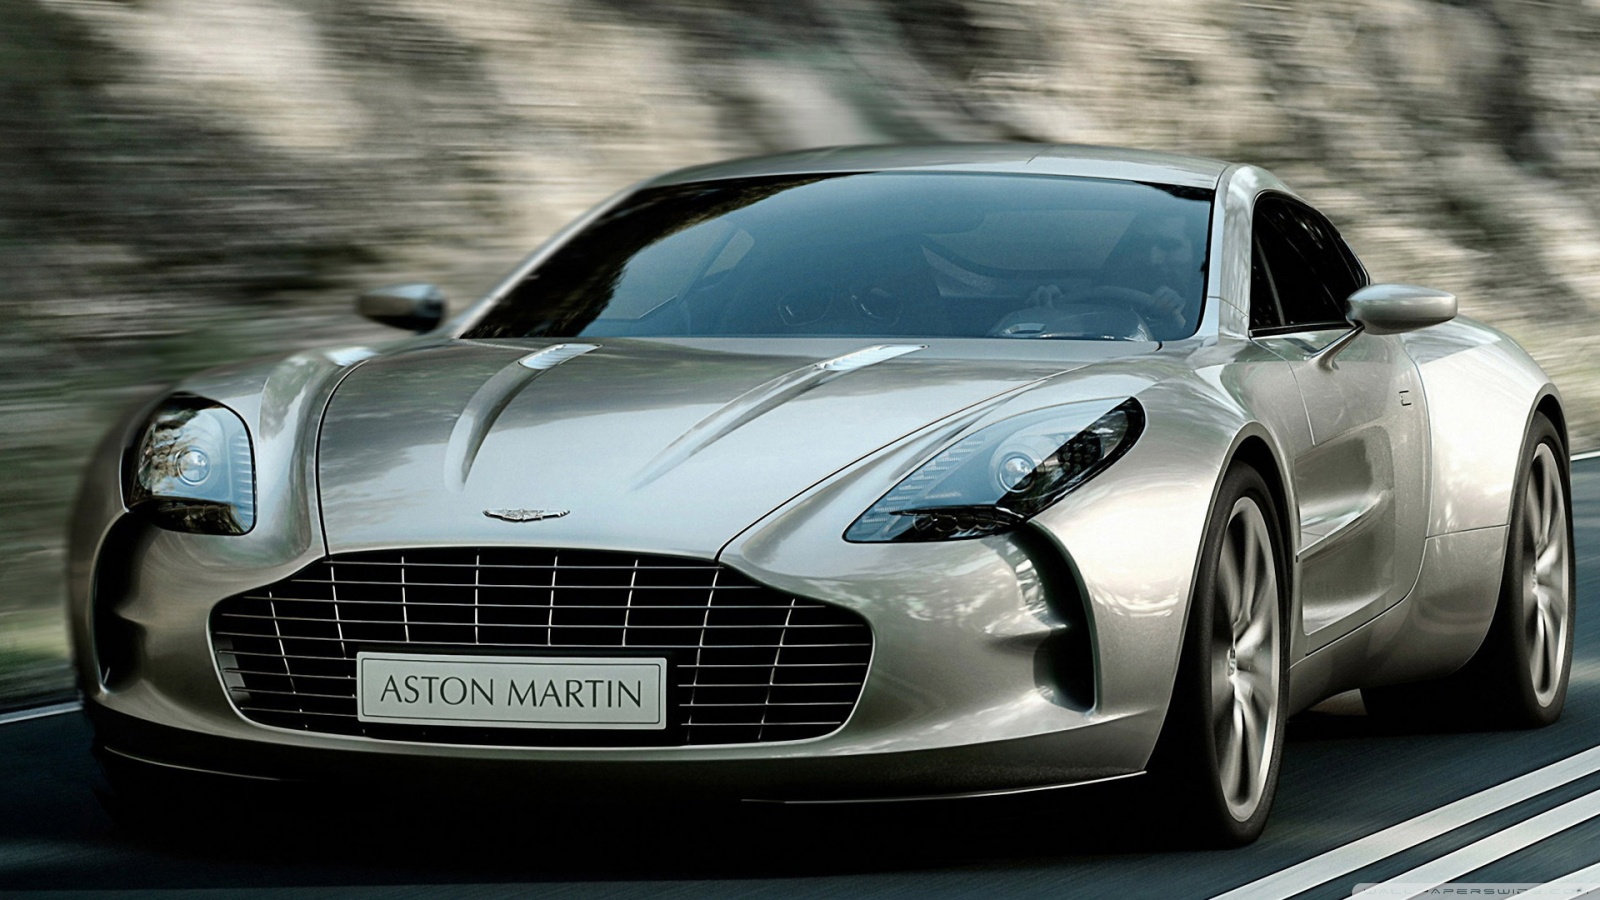 Fond d'écran gratuit de Aston Martin numéro 58778